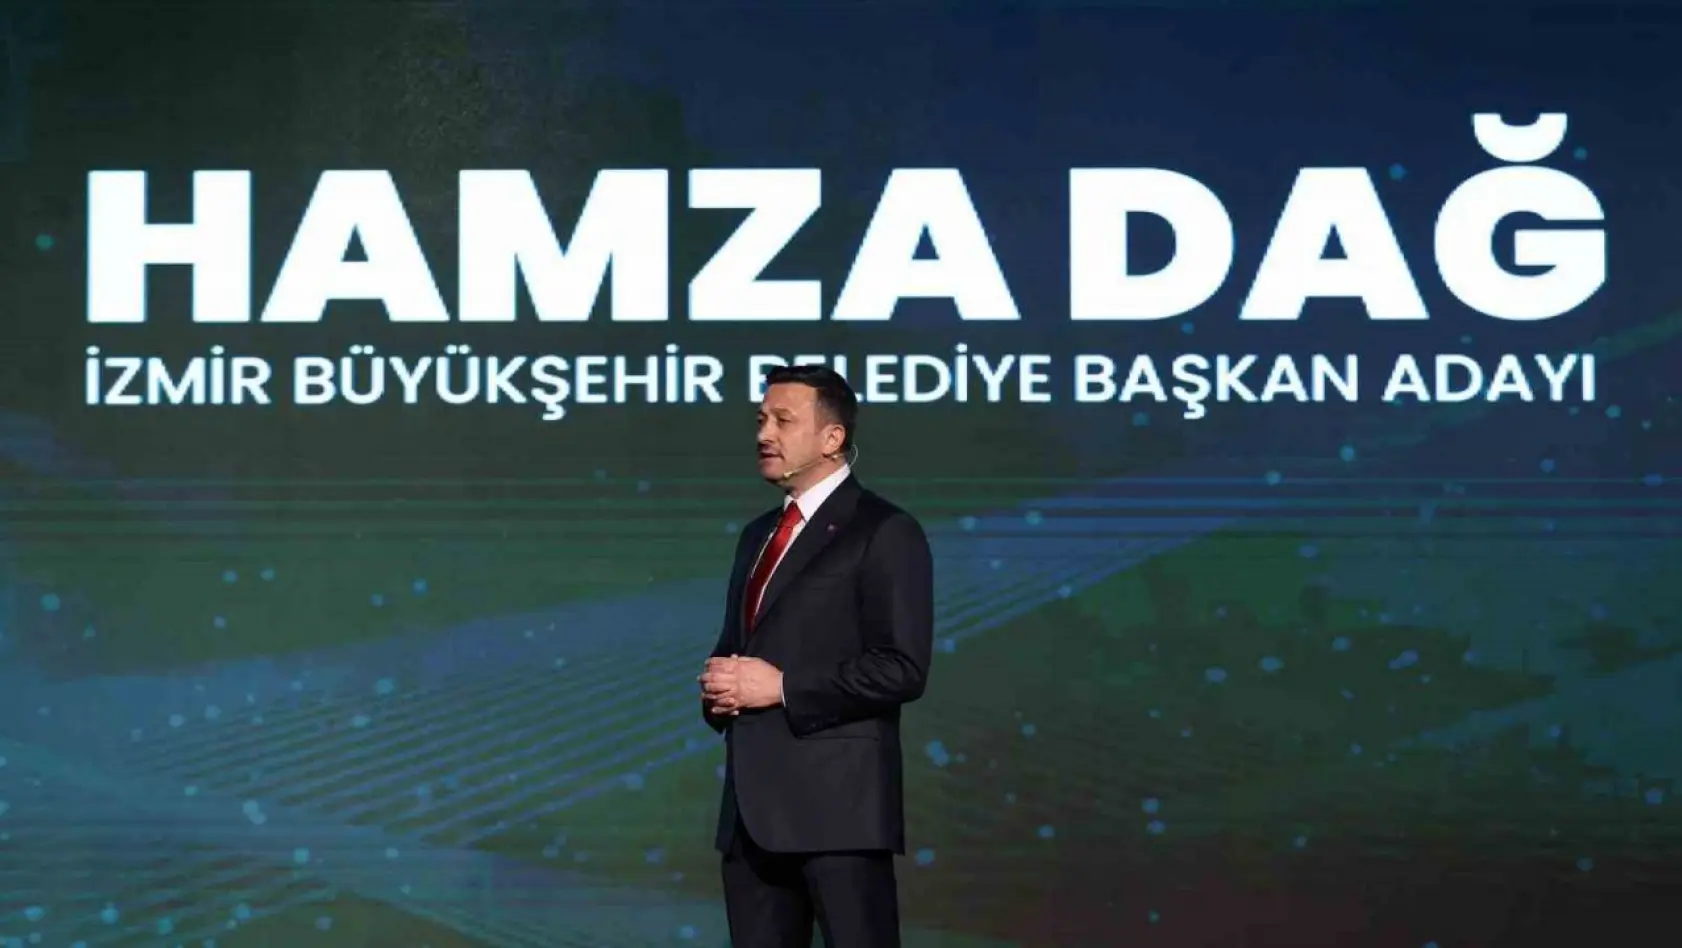 AK Parti'nin İzmir adayı Hamza Dağ, 11 başlık altında projelerini açıkladı